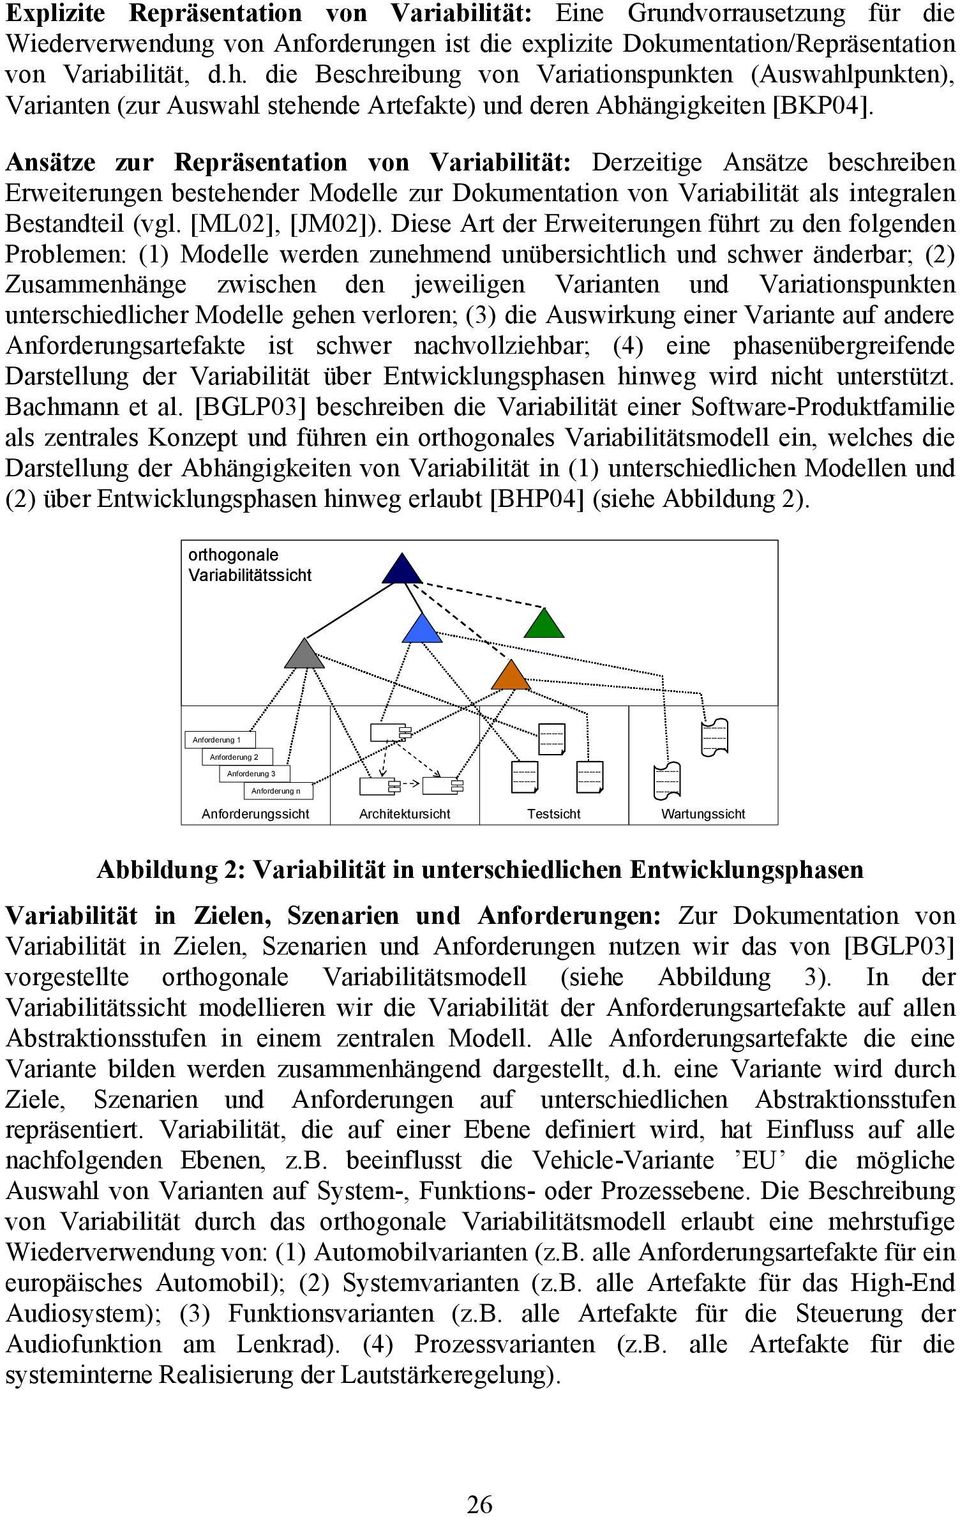 Ansätze zur Repräsentation von Variabilität: Derzeitige Ansätze beschreiben Erweiterungen bestehender Modelle zur Dokumentation von Variabilität als integralen Bestandteil (vgl. [ML02], [JM02]).